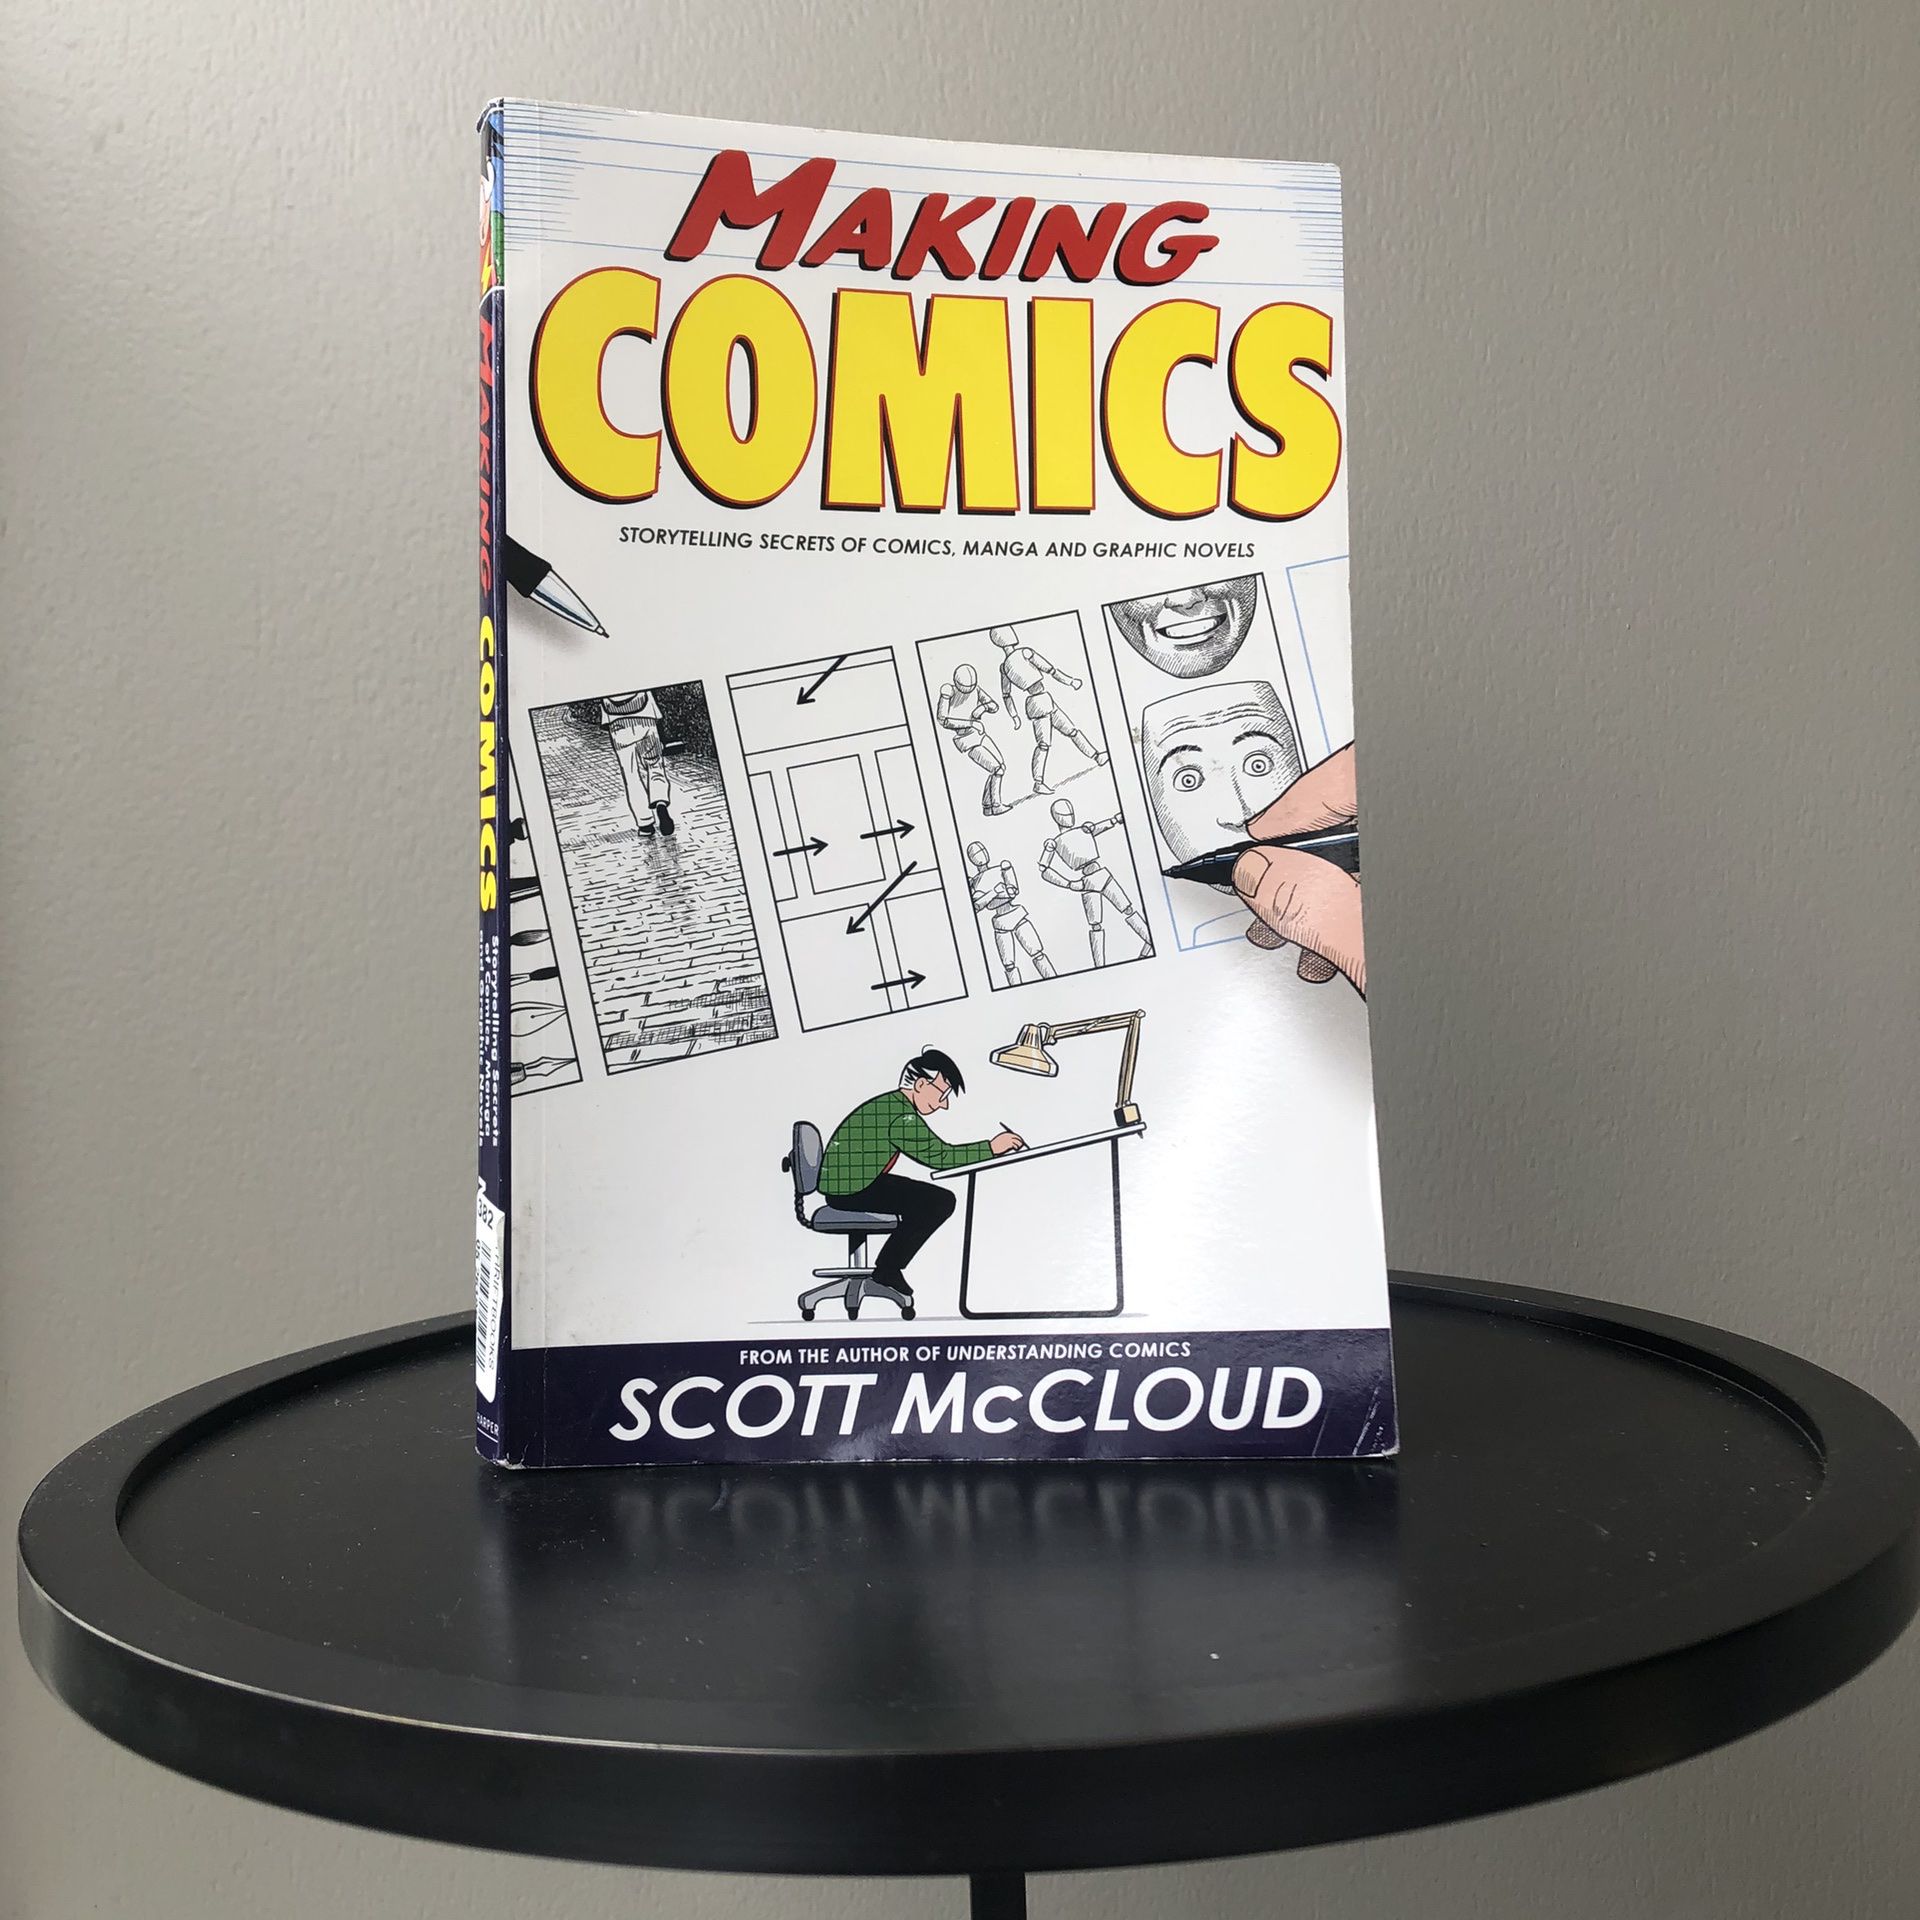 MAKING COMICS BY SCOTT MCCLOUD